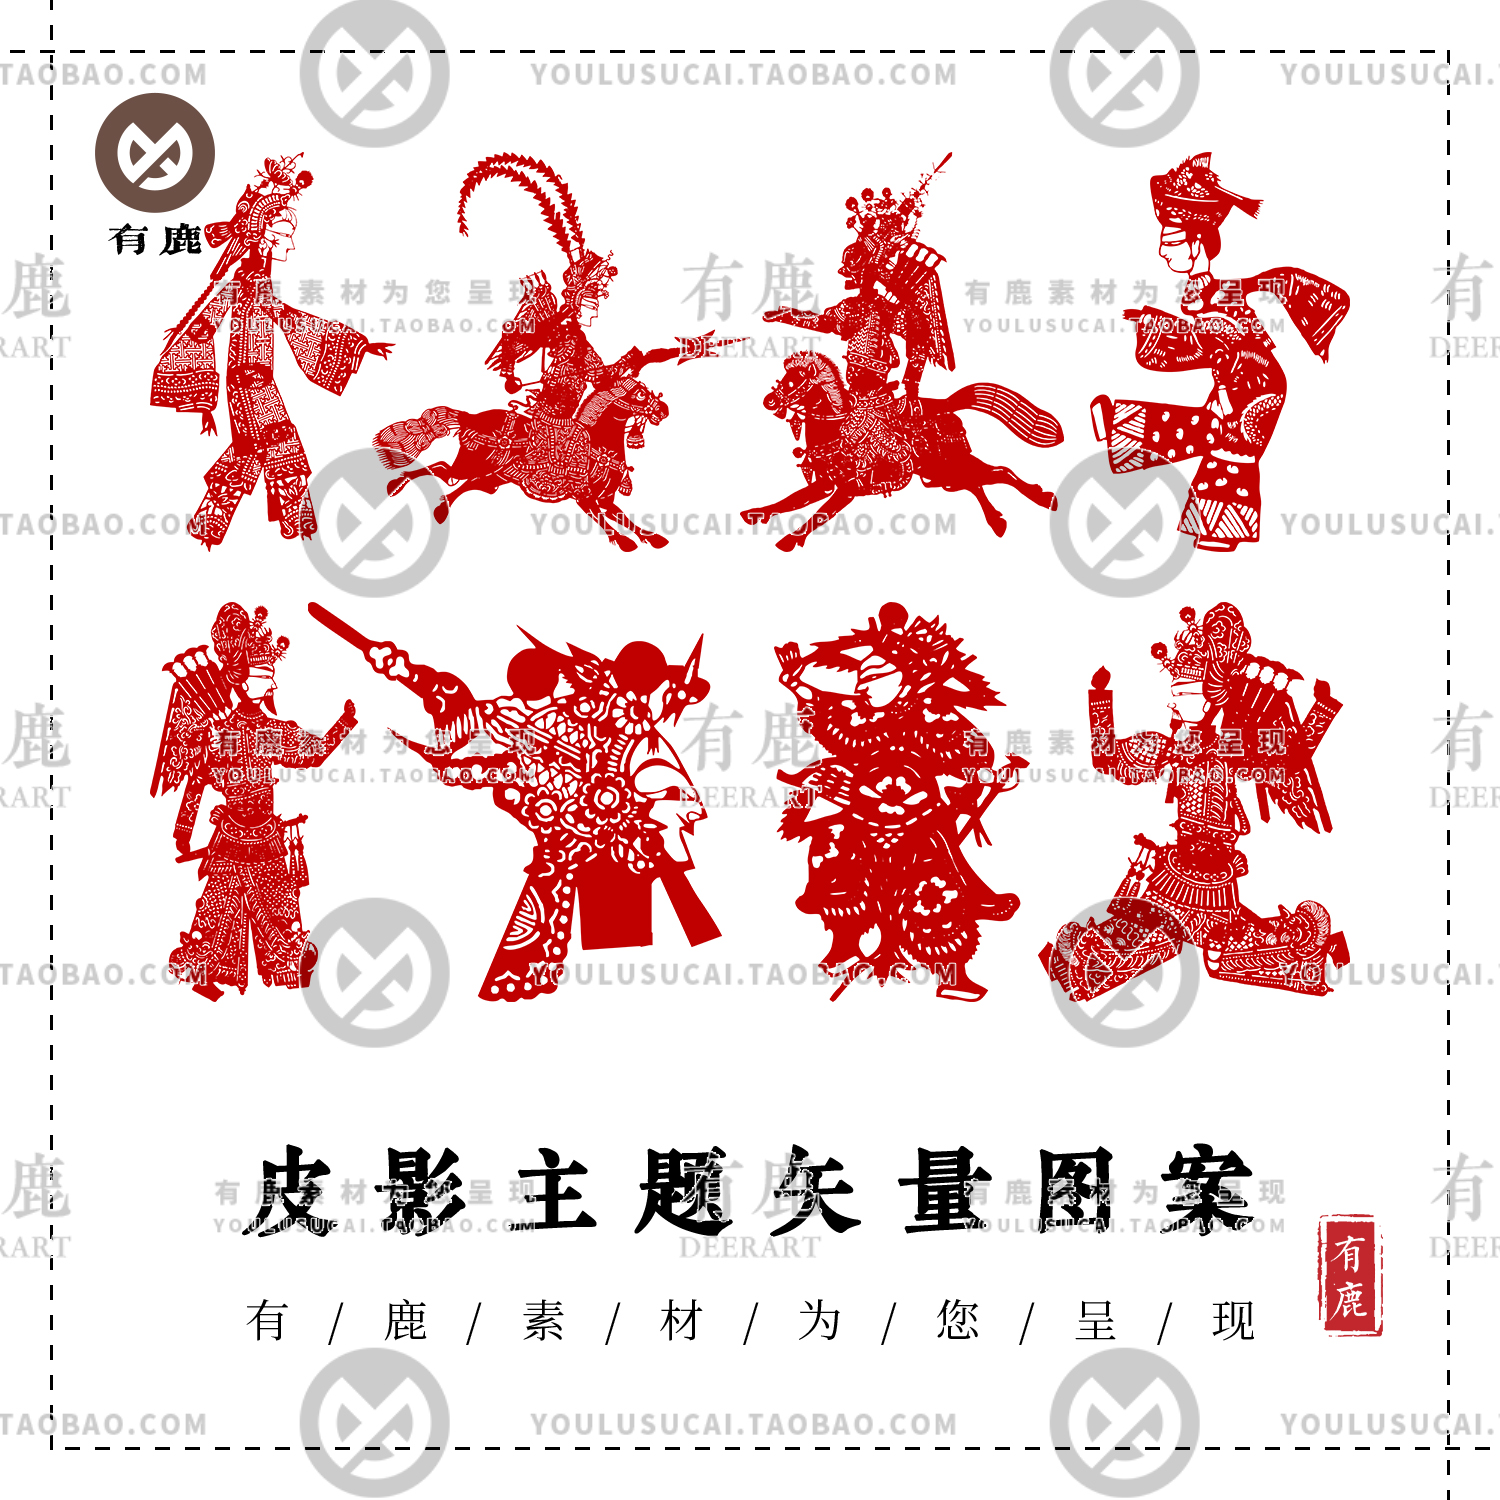 中国传统民俗民间艺术皮影戏人物图案纹样剪影剪纸AI矢量PNG素材